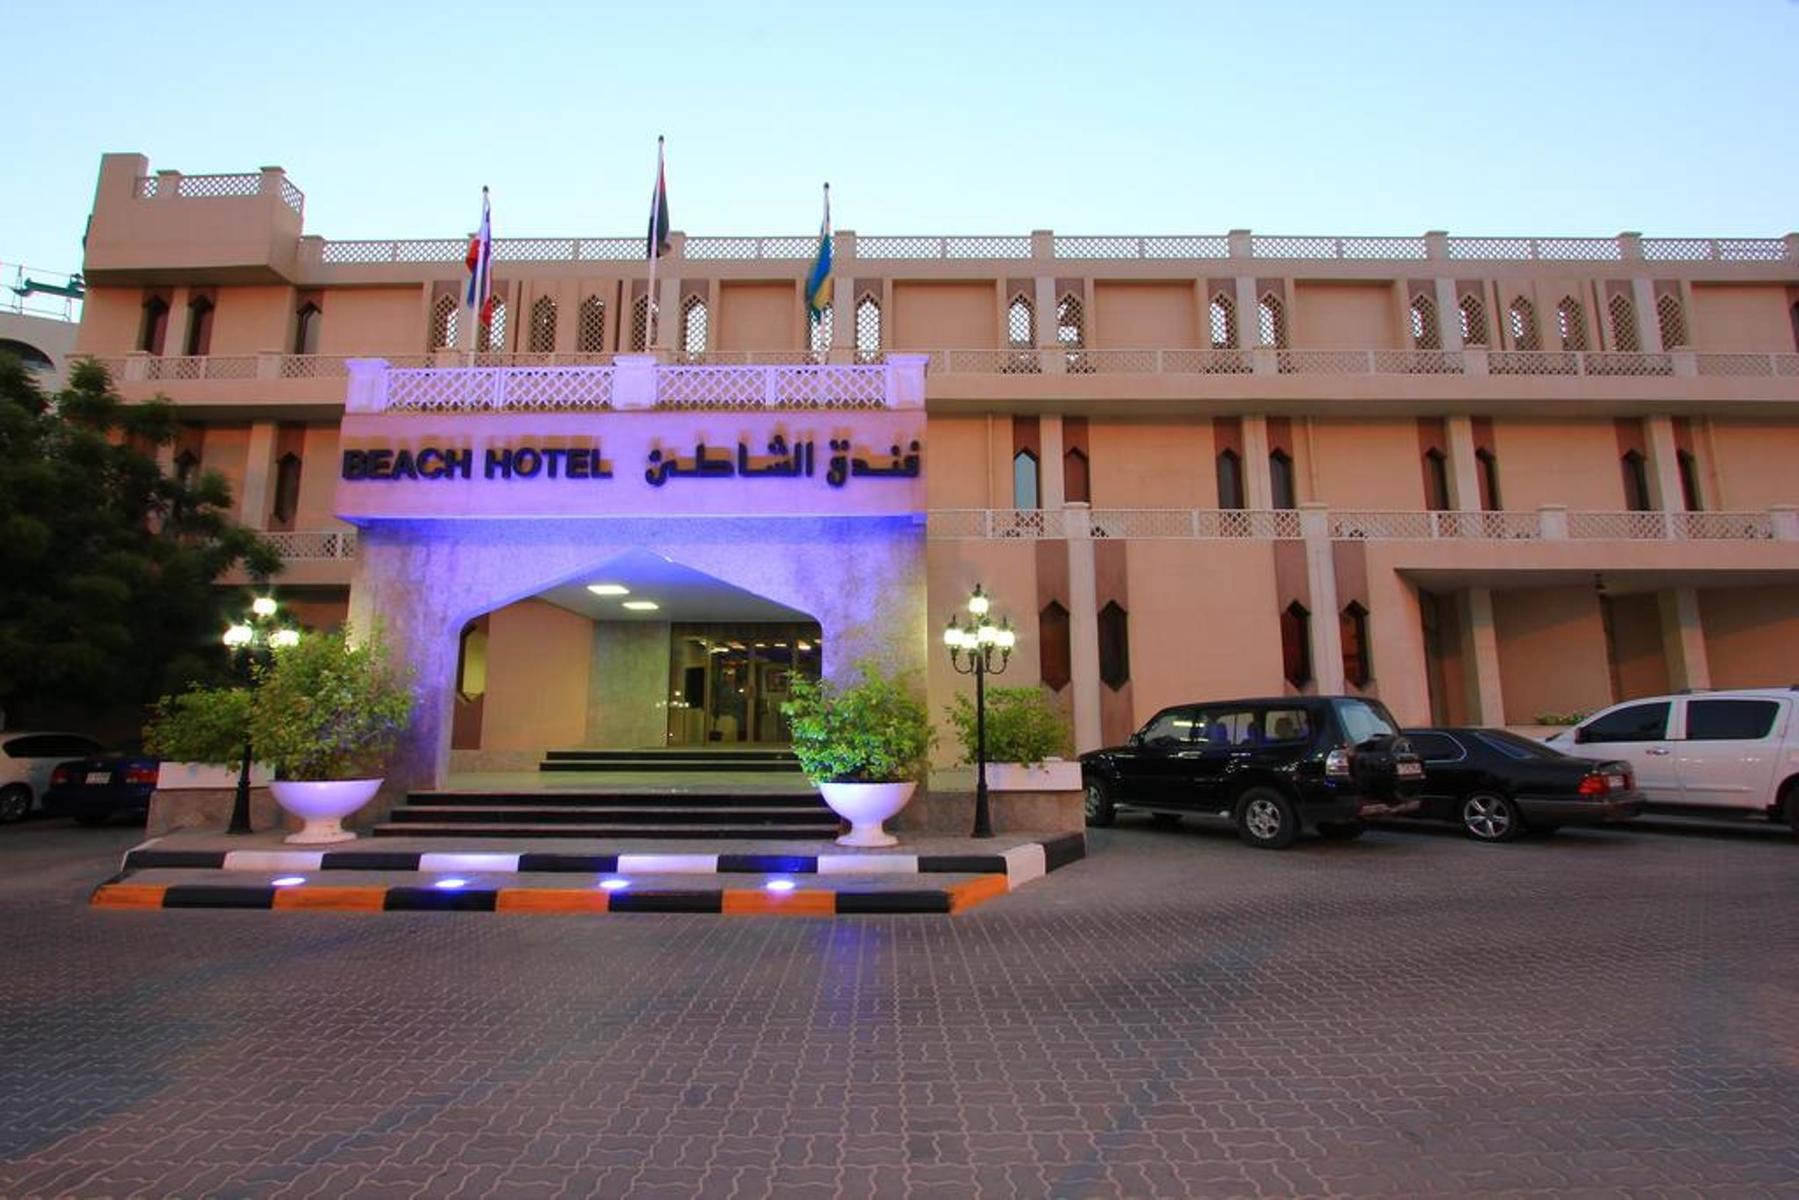 تصاویر Hotel Beach Hotel Sharjah